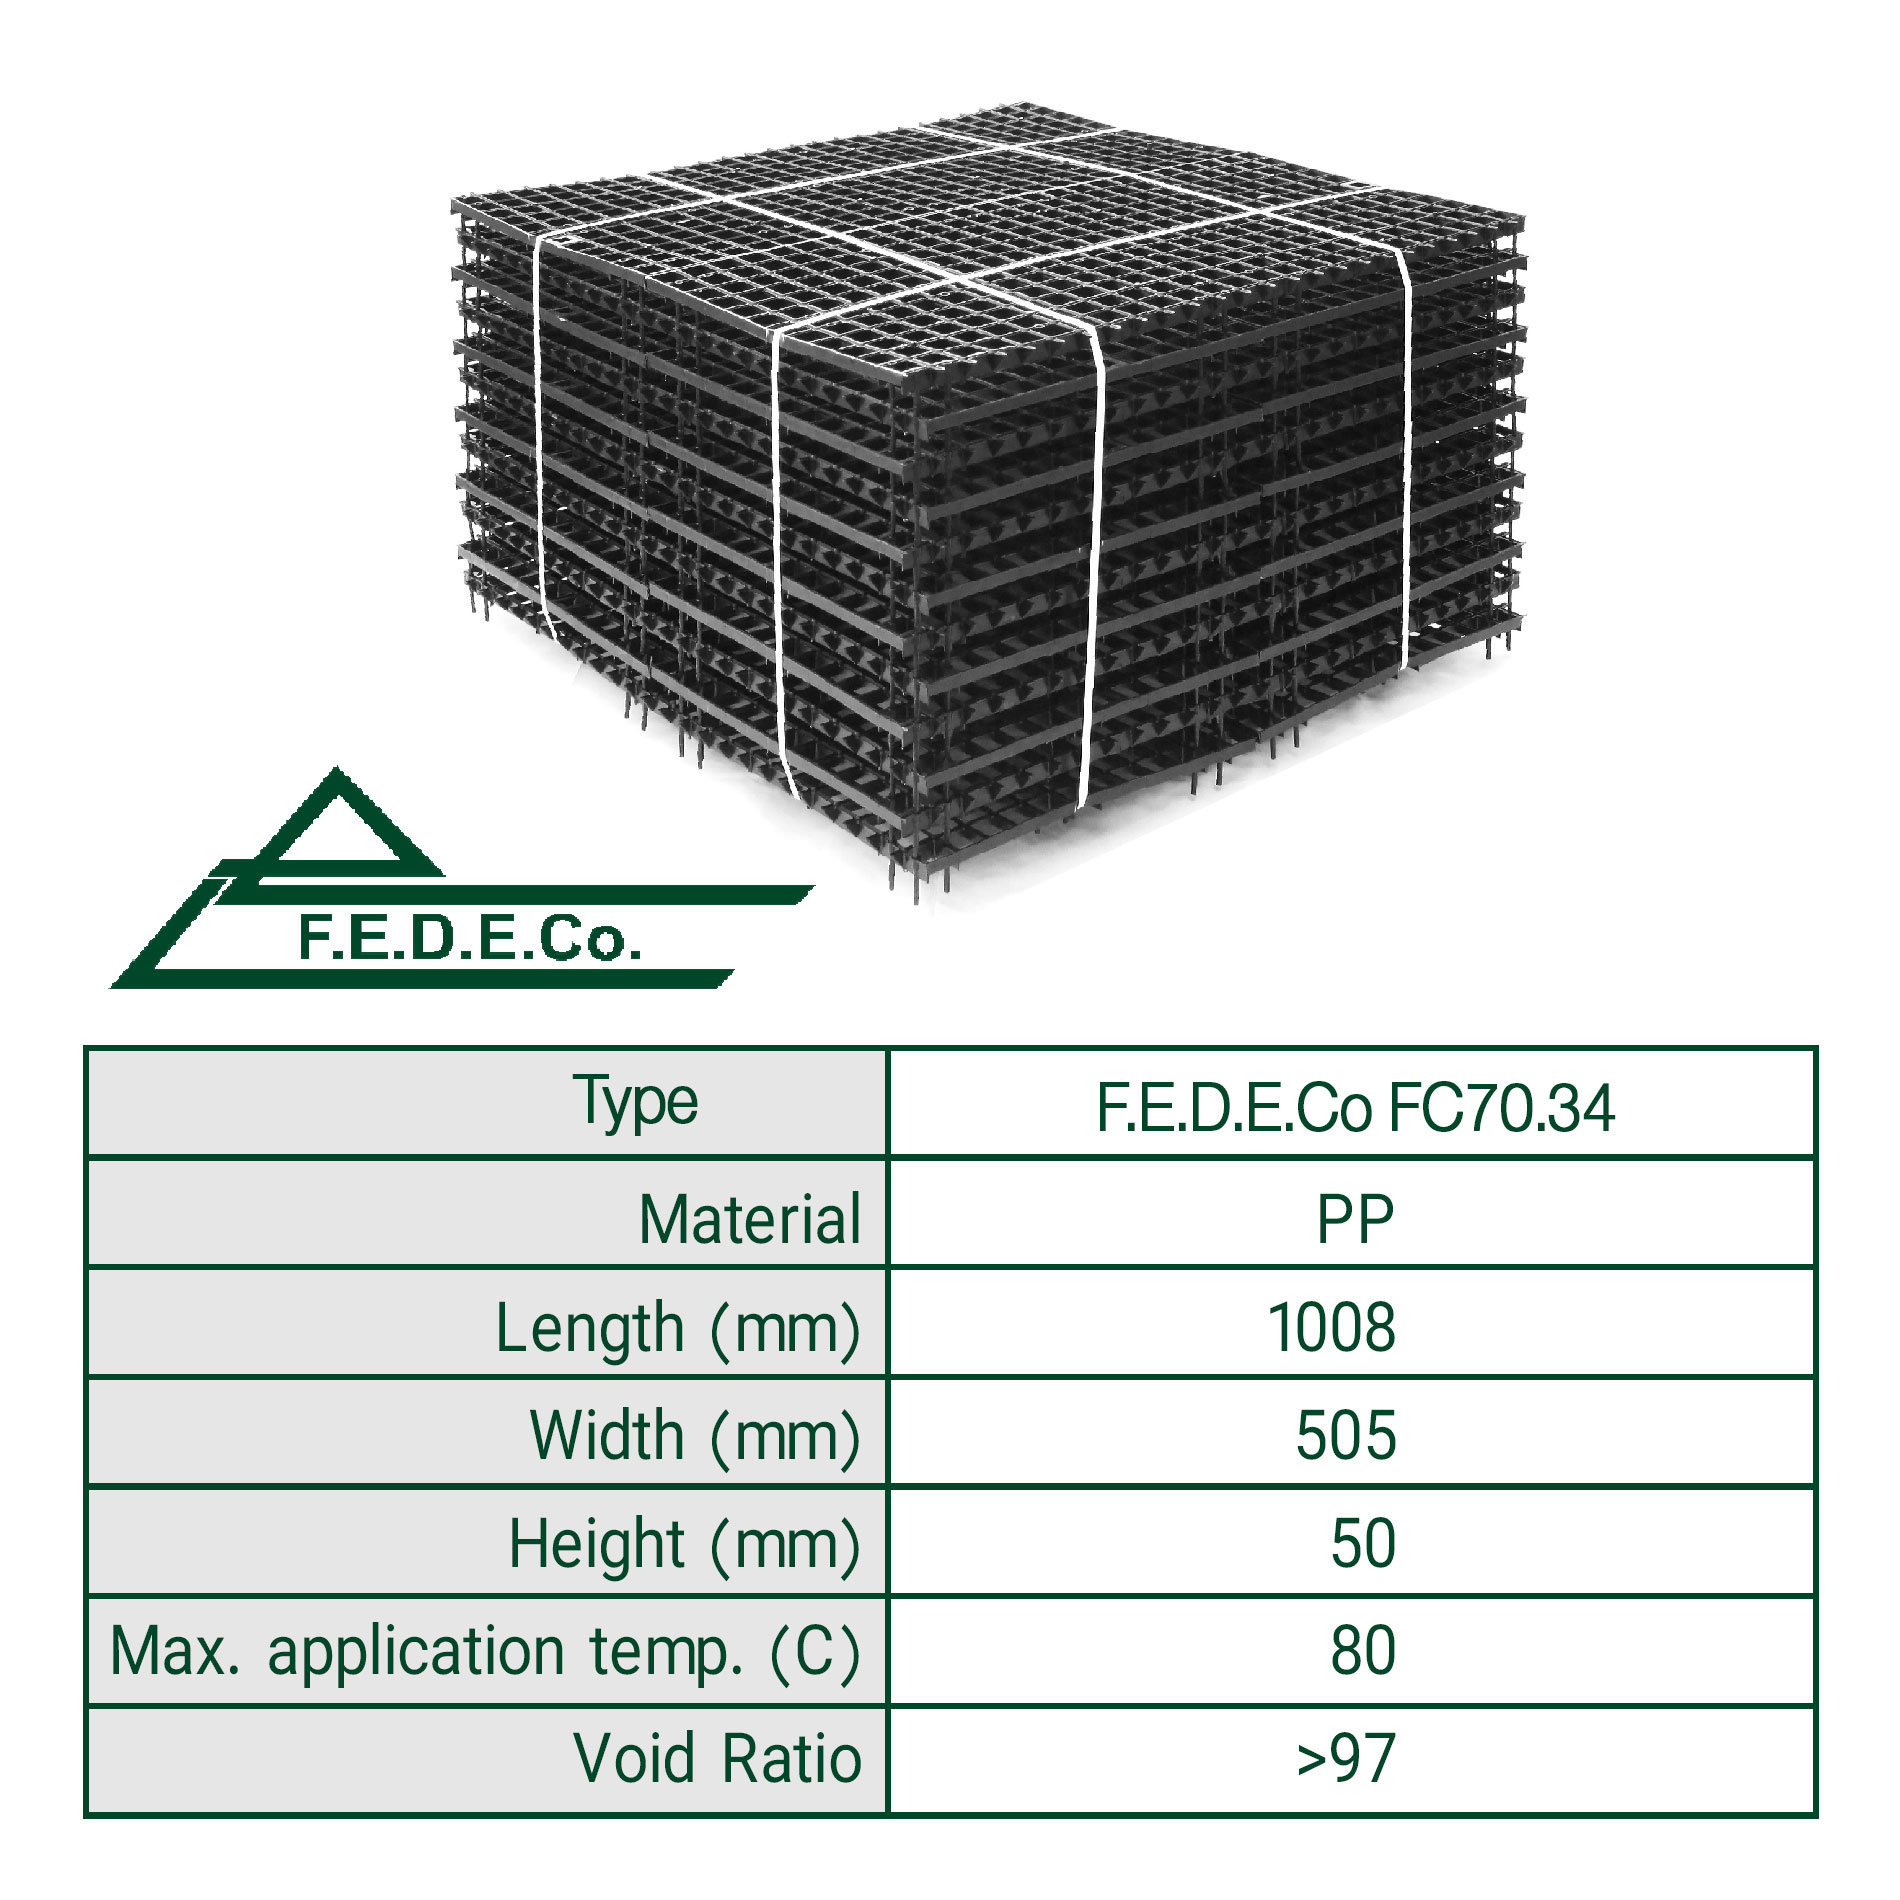 F.E.D.E.Co FC70.34